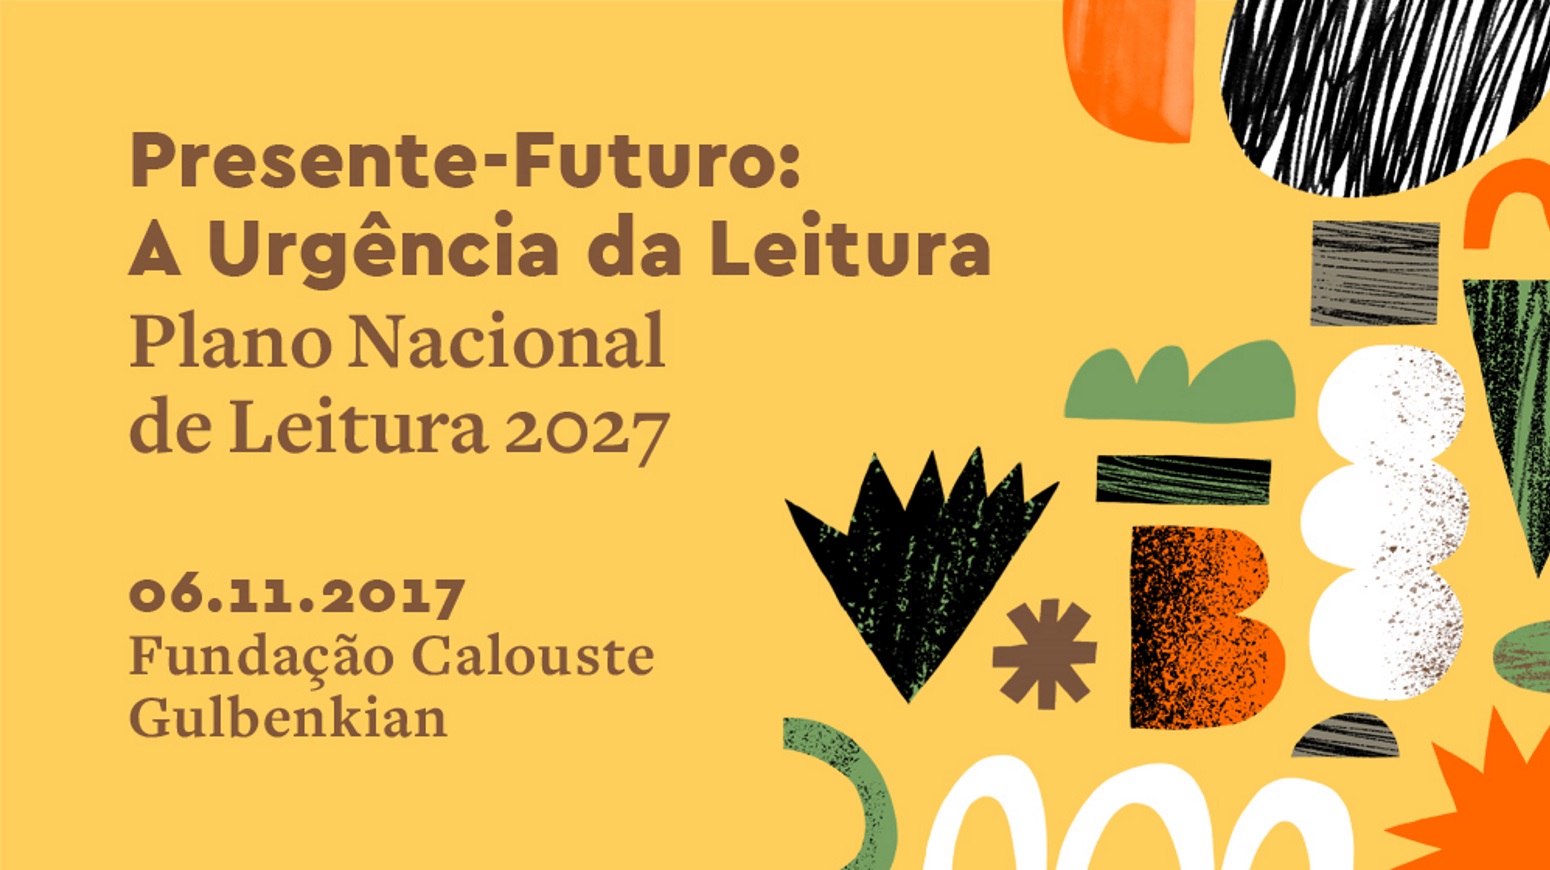 Conferência PNL 2027, Presente-Futuro: a Urgência da Leitura